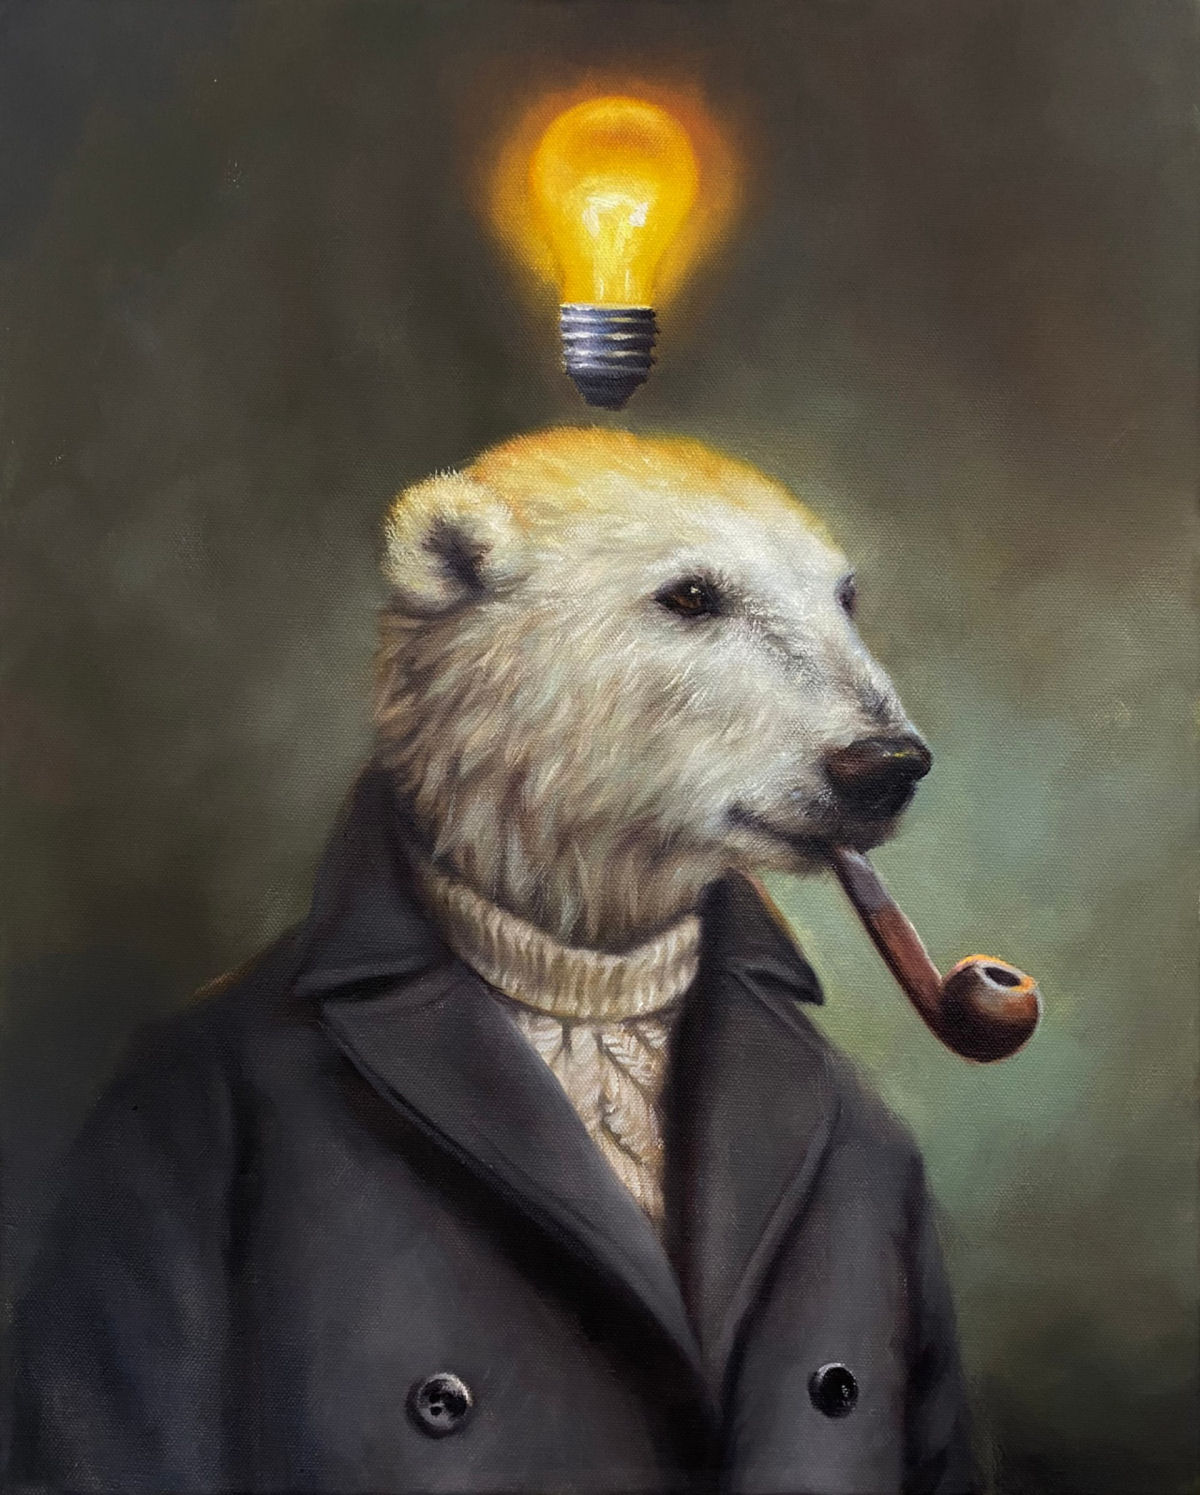 Pinturas a óleo antropomórficas emprestam narrativas satíricas para ursos 02